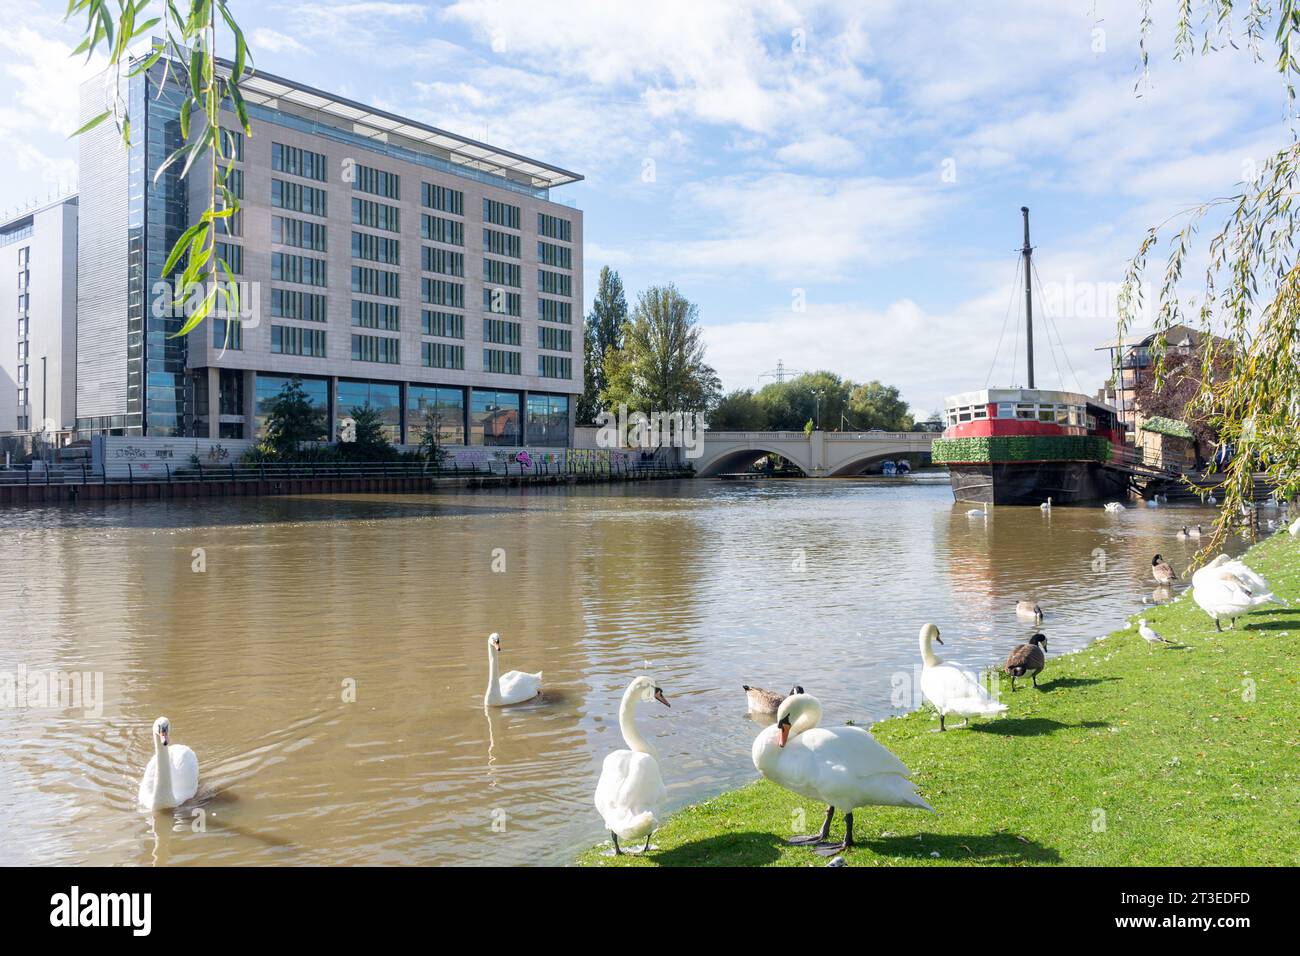 Riverside Walk sur les rives de la rivière Nene, Rivergate, Peterborough, Cambridgeshire, Angleterre, Royaume-Uni Banque D'Images